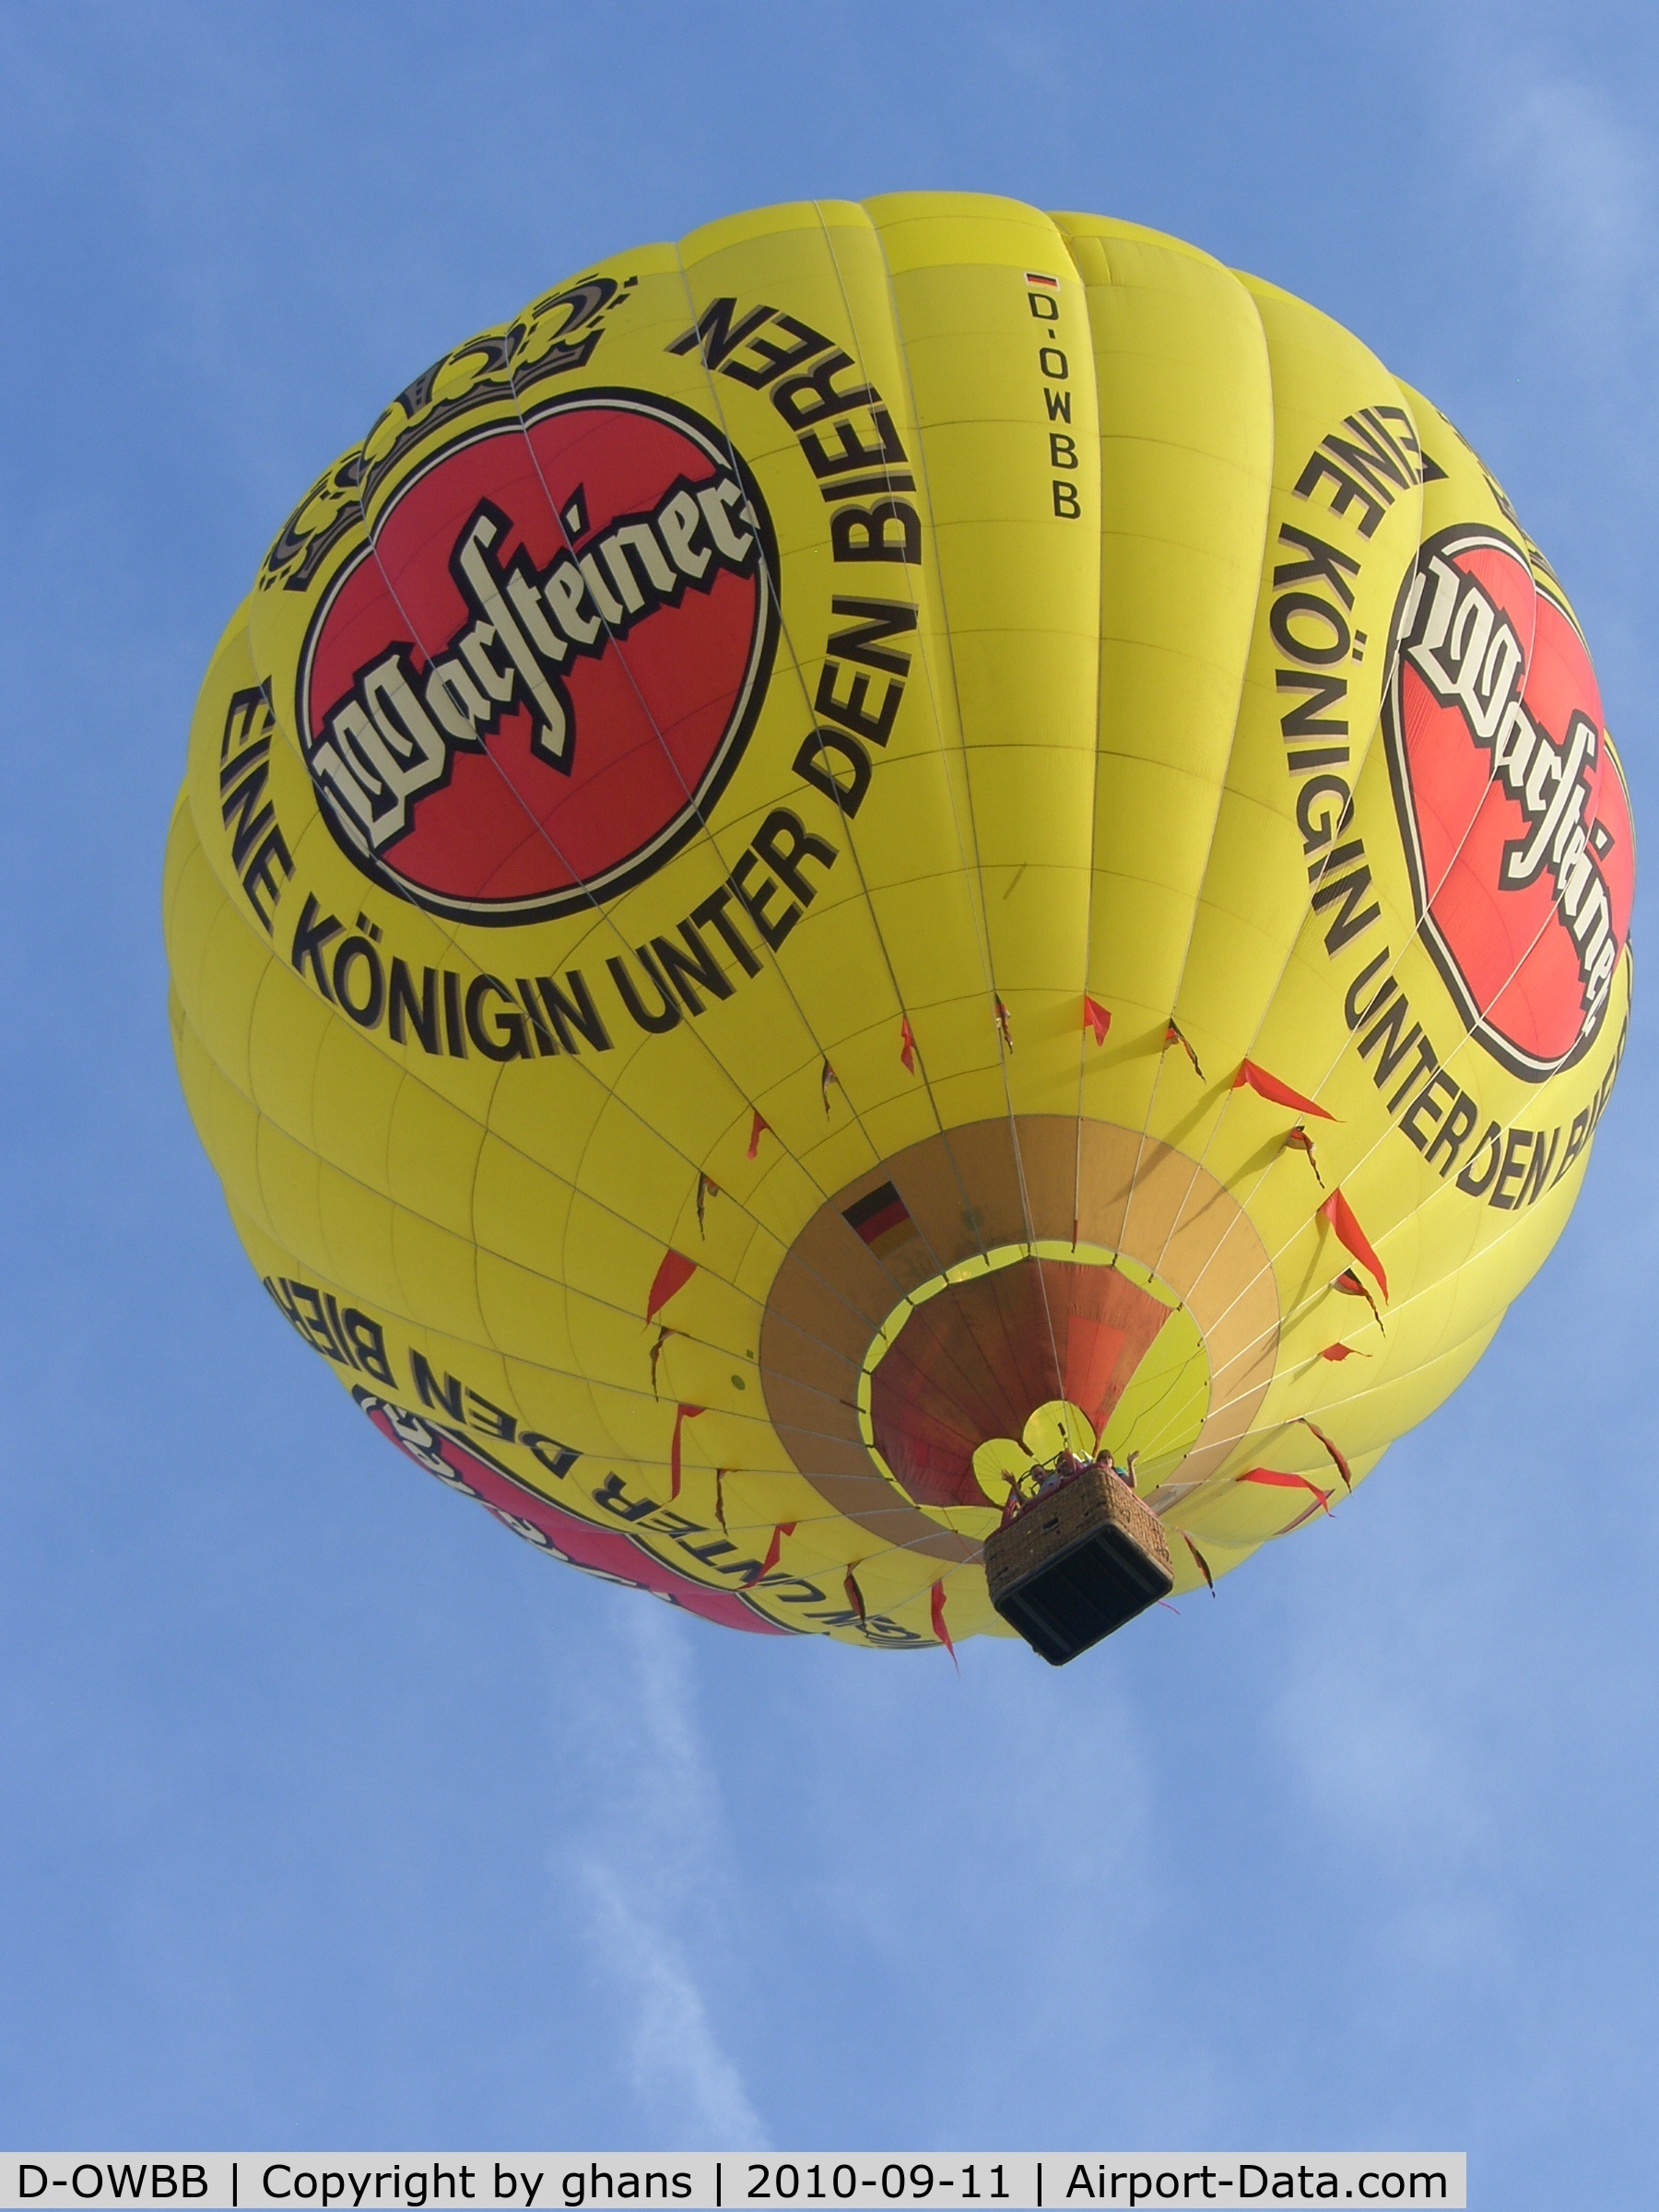 D-OWBB, 1997 Schroeder Fire Balloons G30/24 C/N 587, WIM 2010